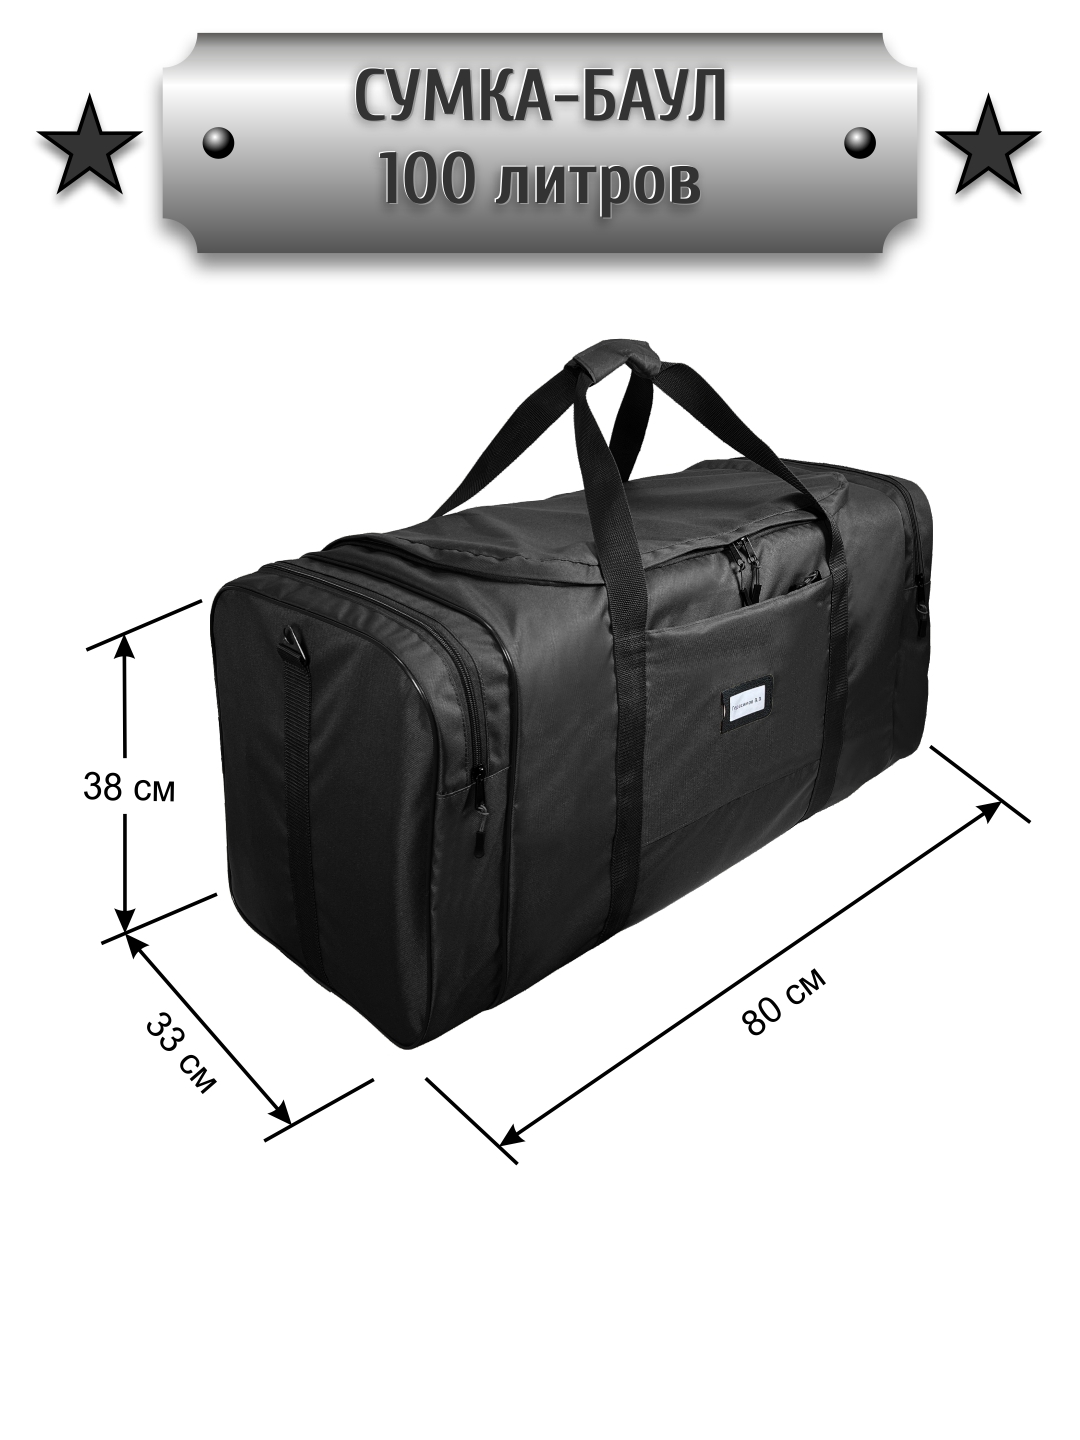 Дорожная сумка мужская CROSS CASE CCM-1070 черная extra strong, 80х33х38 см